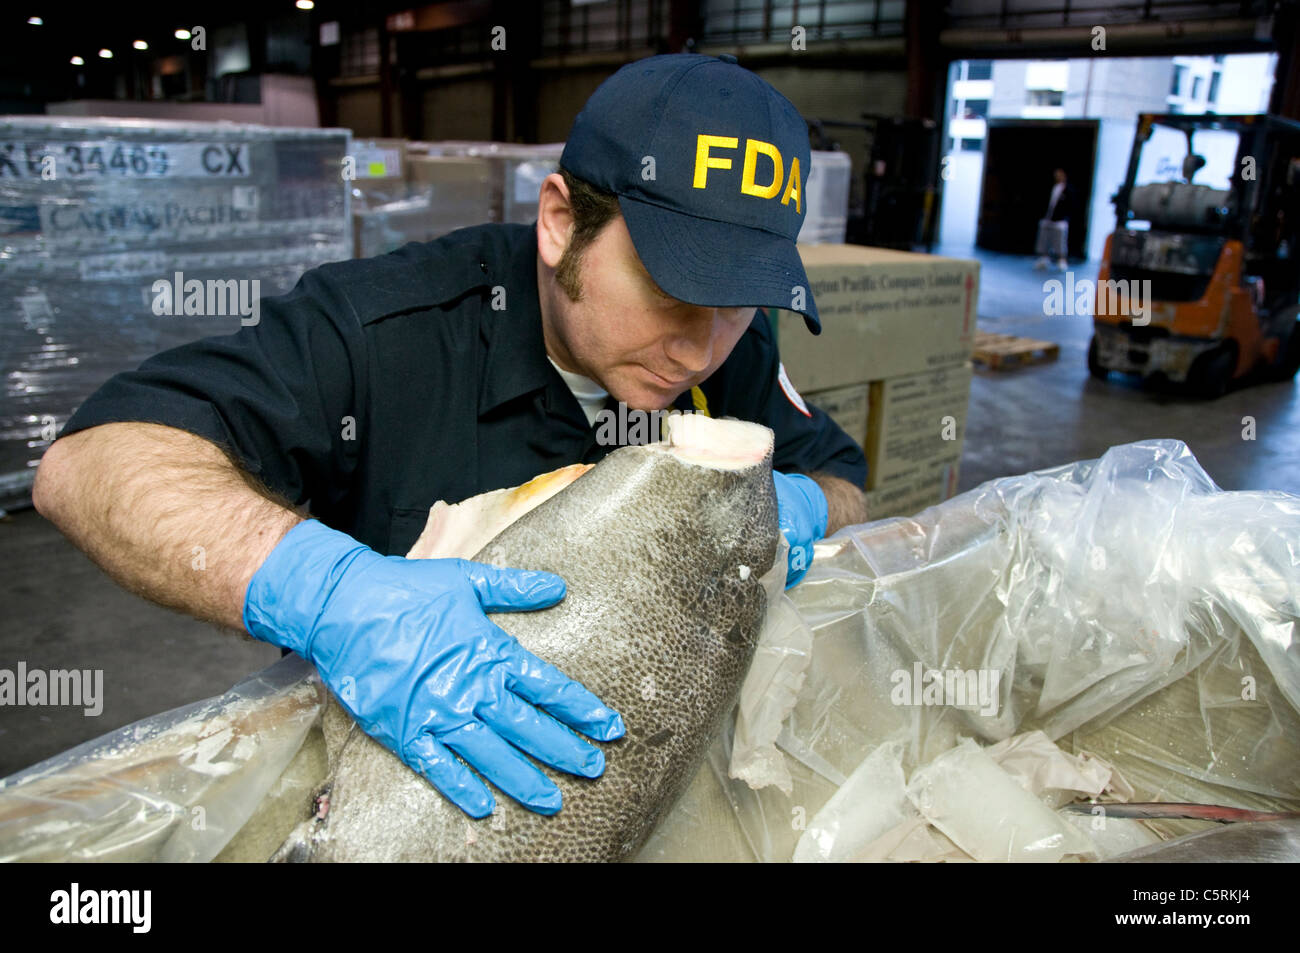 FDA inspecteurs vérifier les expéditions de fruits de mer importés à l'Aéroport International de Los Angeles. Banque D'Images